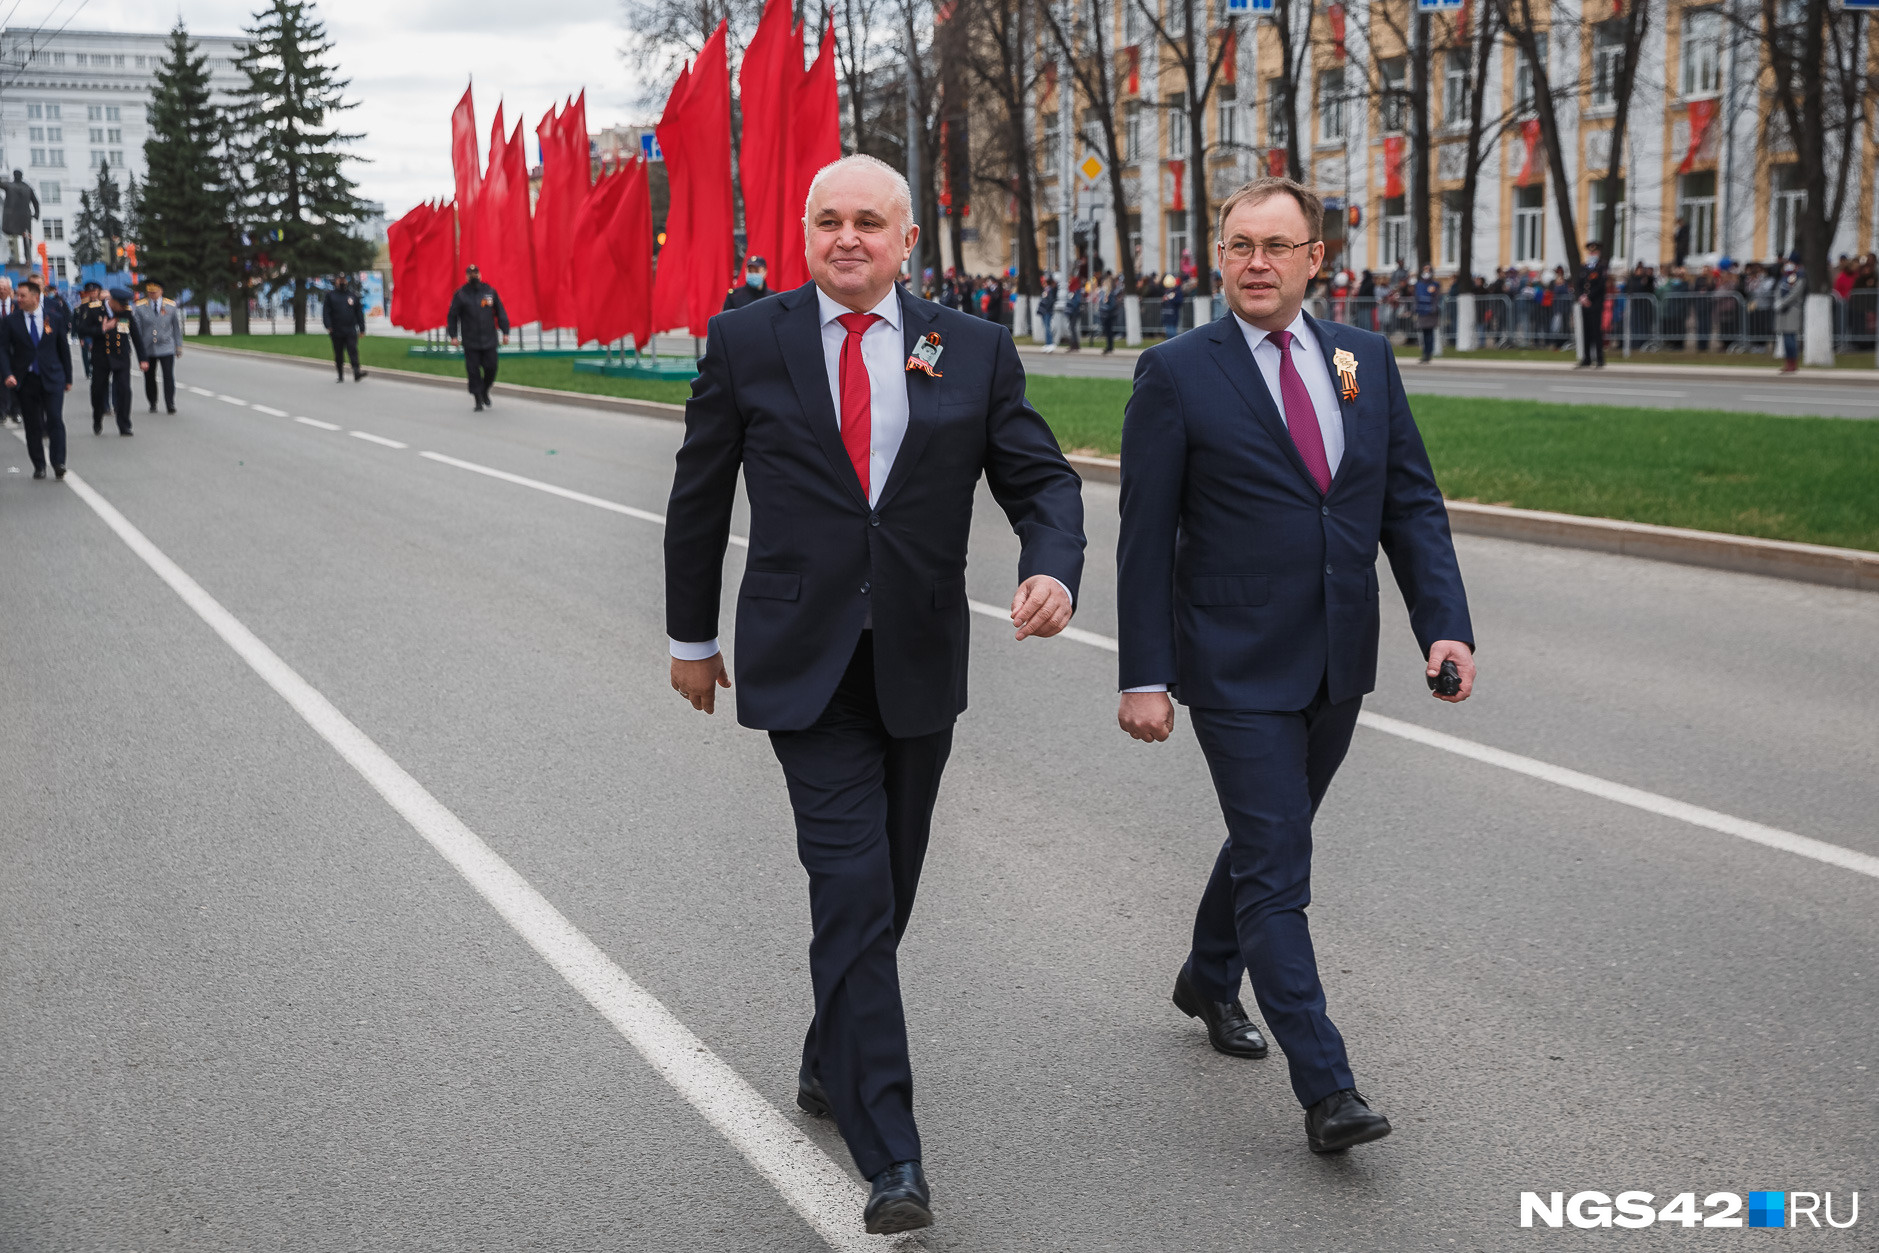 Середюк или «новый варяг»: кого жители Кузбасса хотят увидеть на посту губернатора